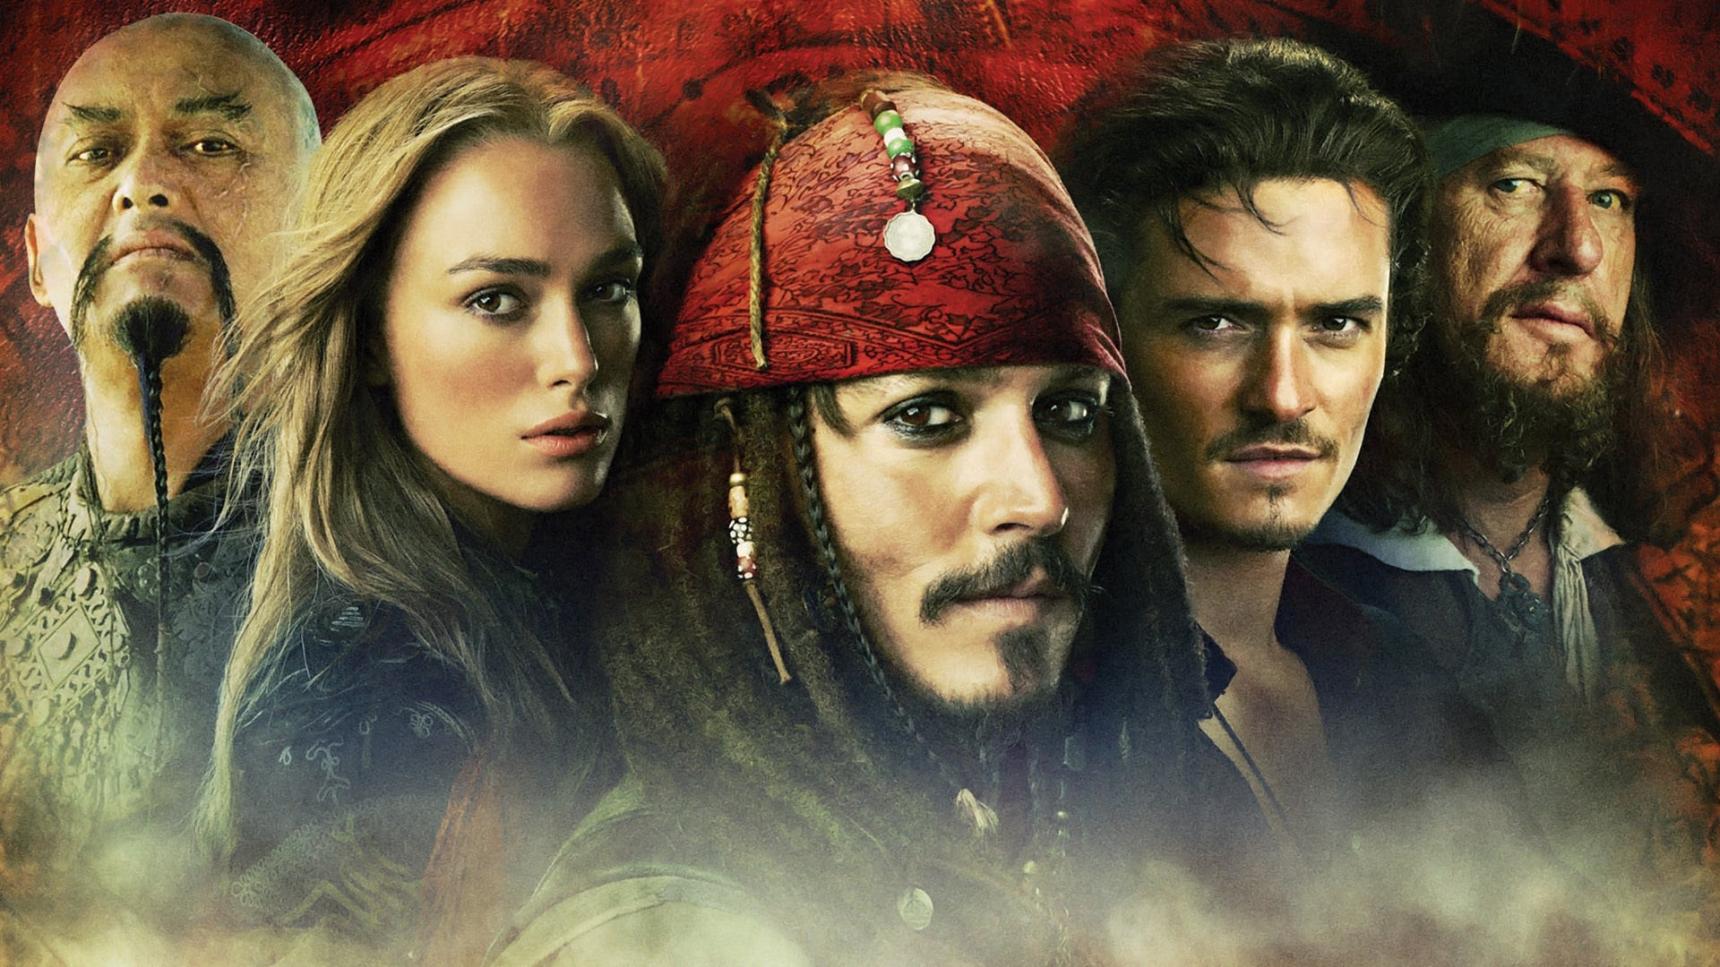 Fondo de pantalla de la película Piratas del Caribe: En el fin del mundo en Cuevana 3 gratis